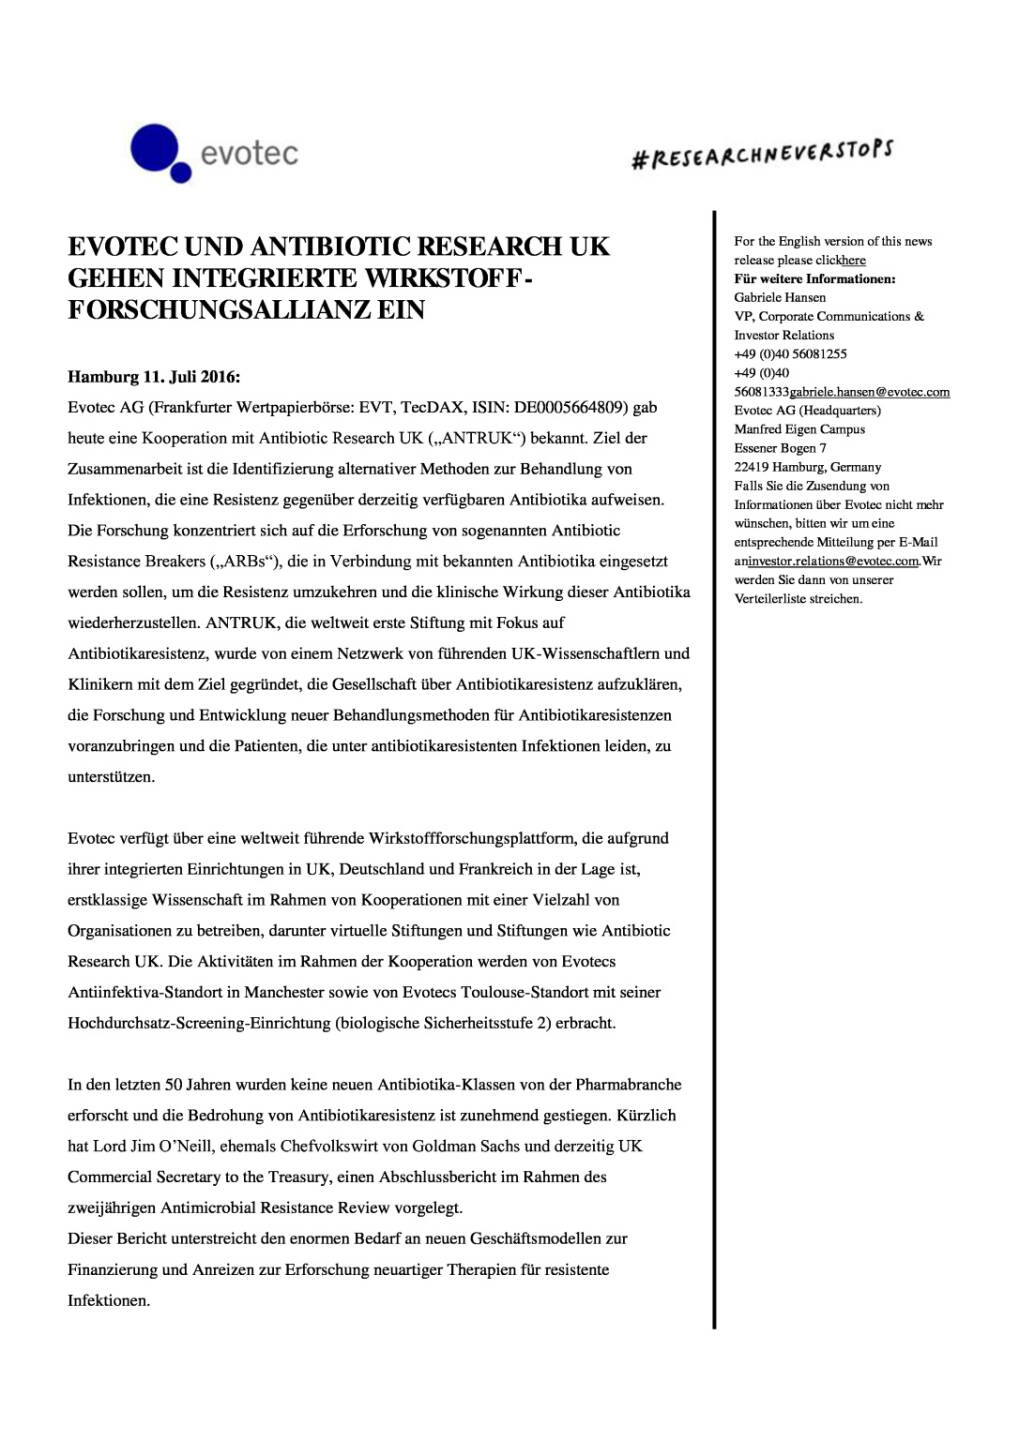 Evotec und Antibiotic Research UK gehen Wirkstoff-Forschungsallianz ein, Seite 1/3, komplettes Dokument unter http://boerse-social.com/static/uploads/file_1370_evotec_und_antibiotic_research_uk_gehen_wirkstoff-forschungsallianz_ein.pdf